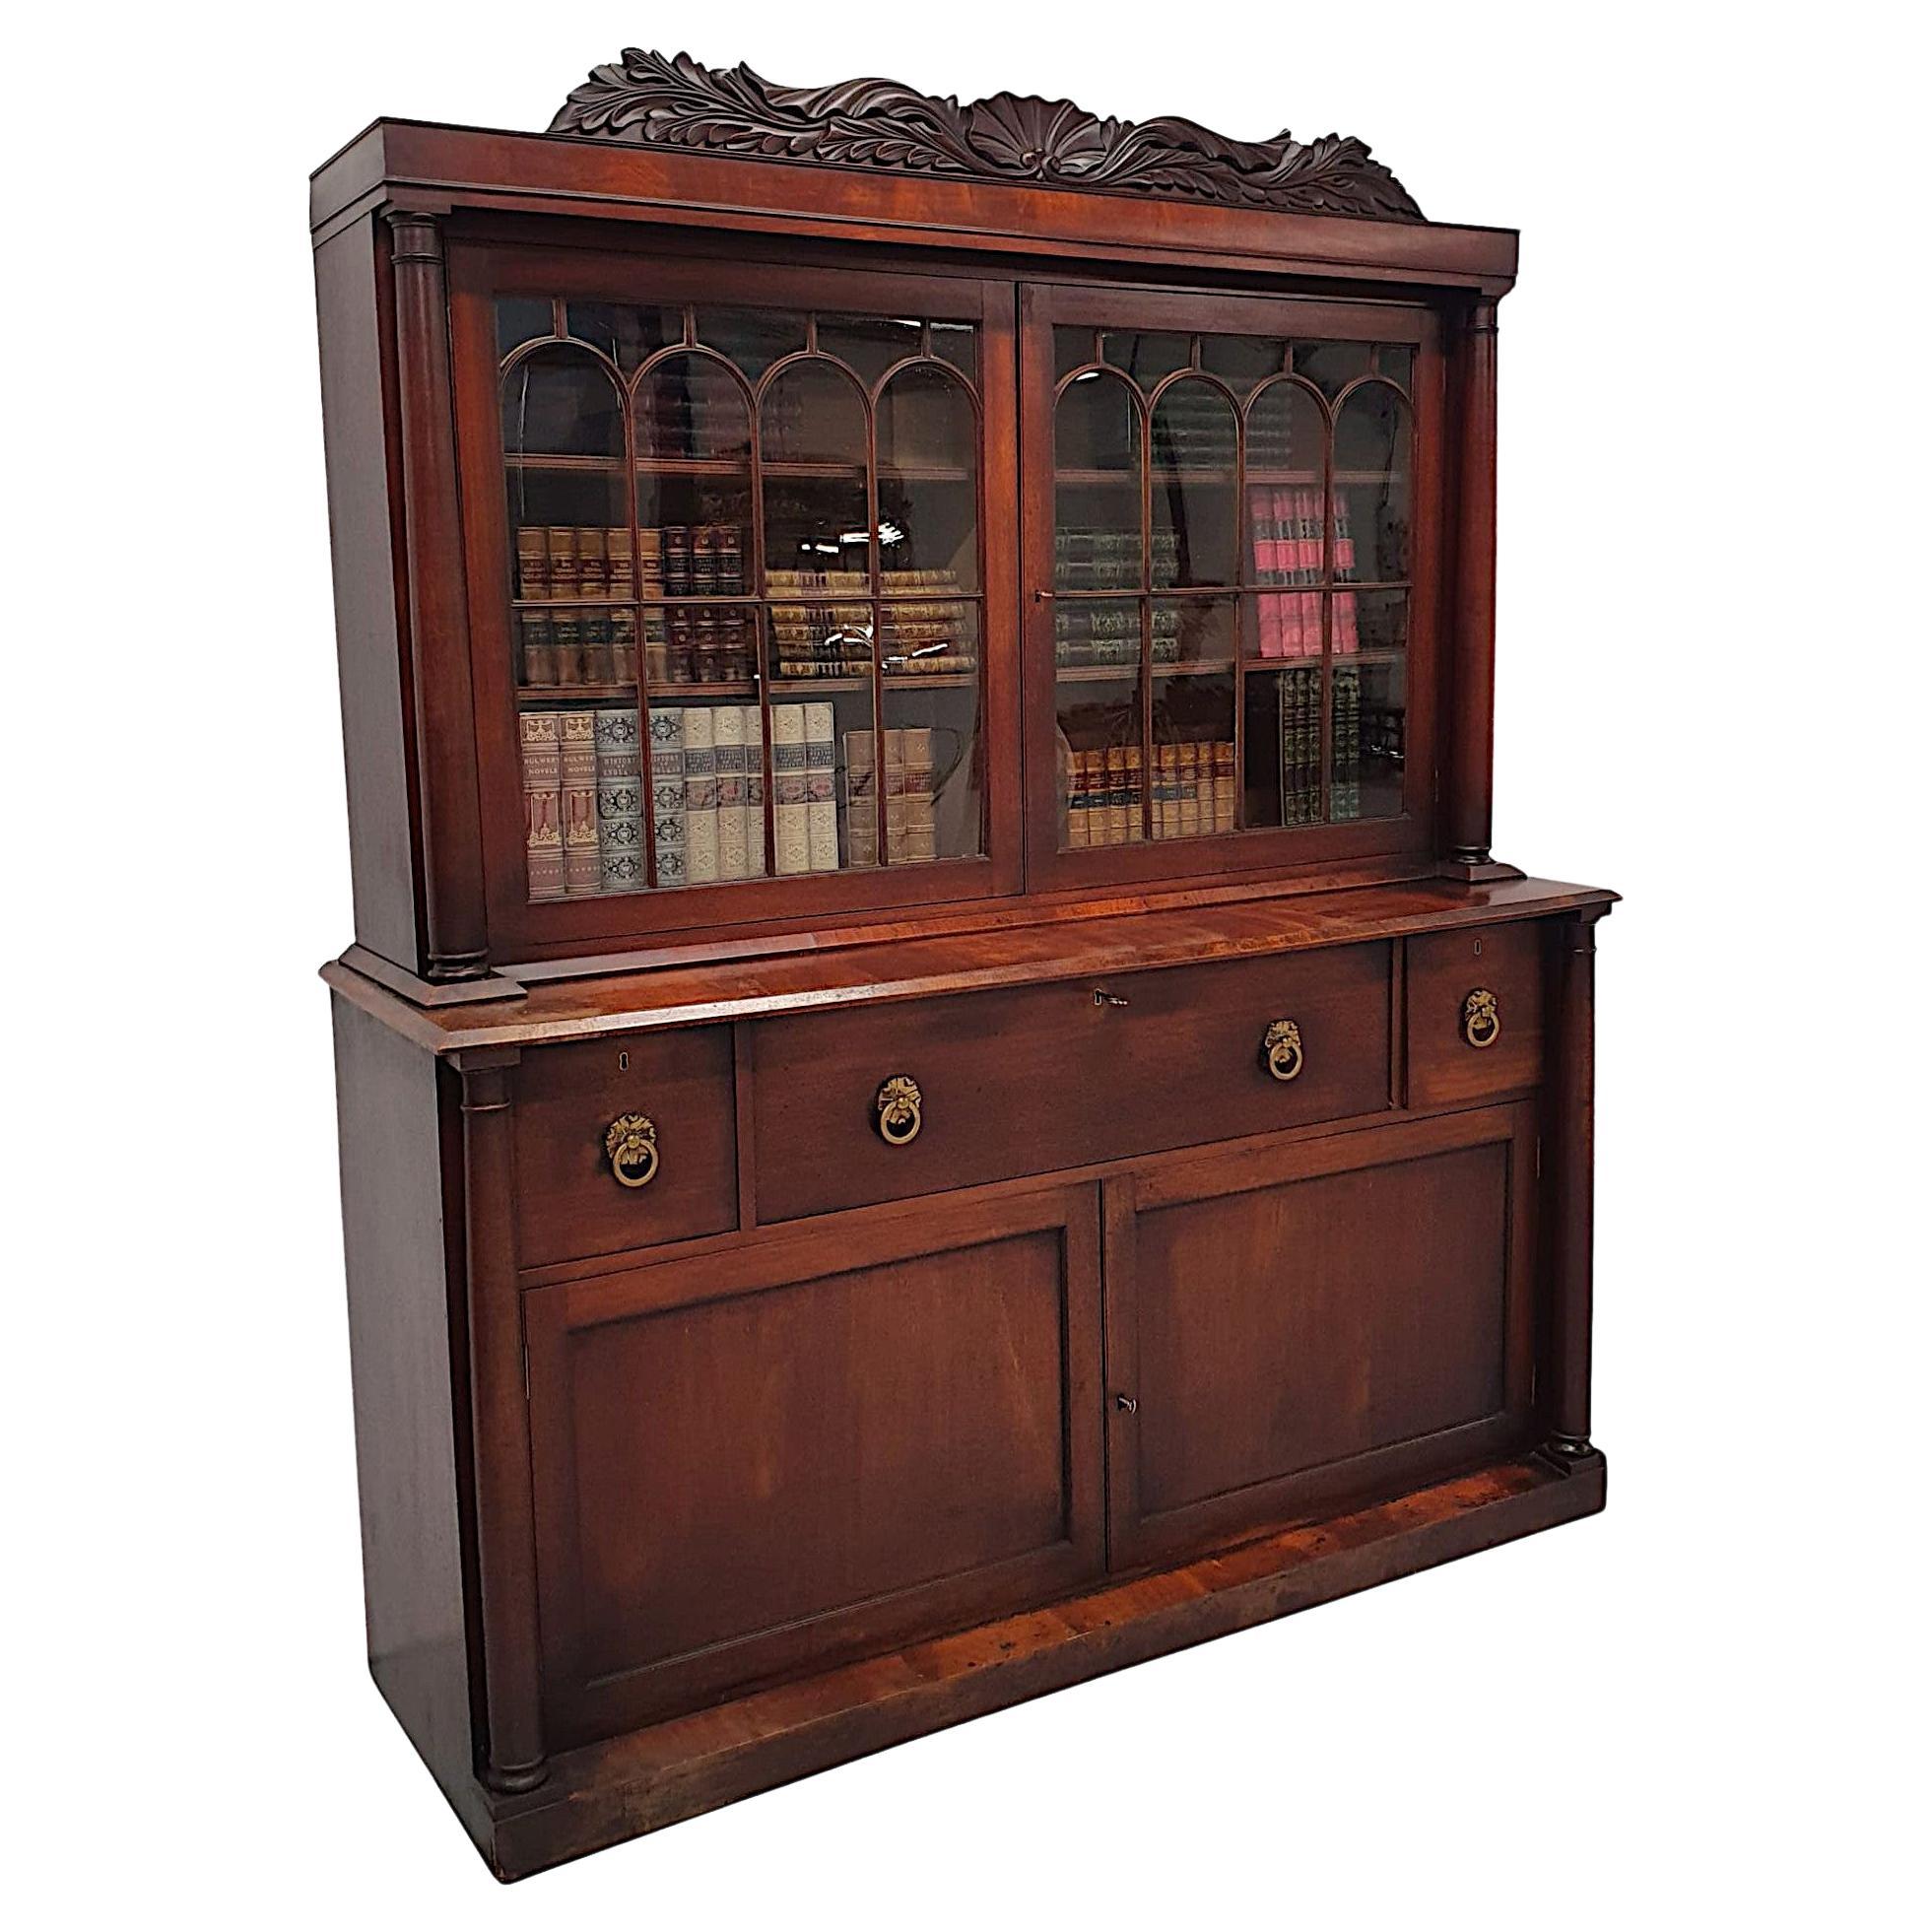 A Rare and Fine Early 19th Century William IV Irish Secretaire Bookcase For Sale